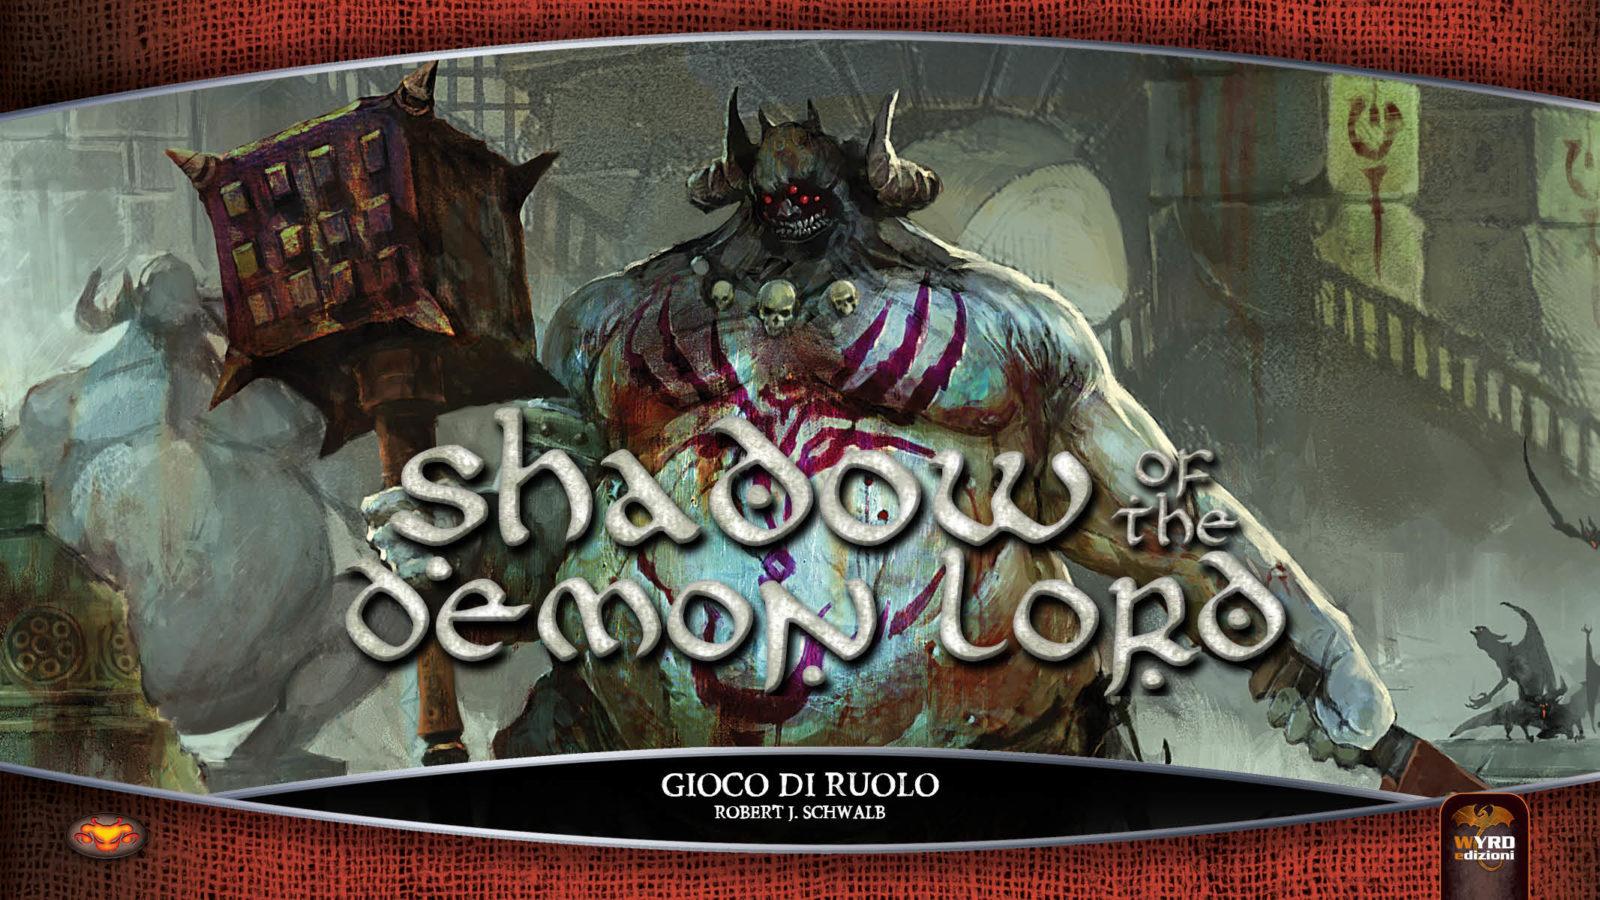 Maggiori informazioni riguardo "Shadow of the Demon Lord: come (non?) funziona"